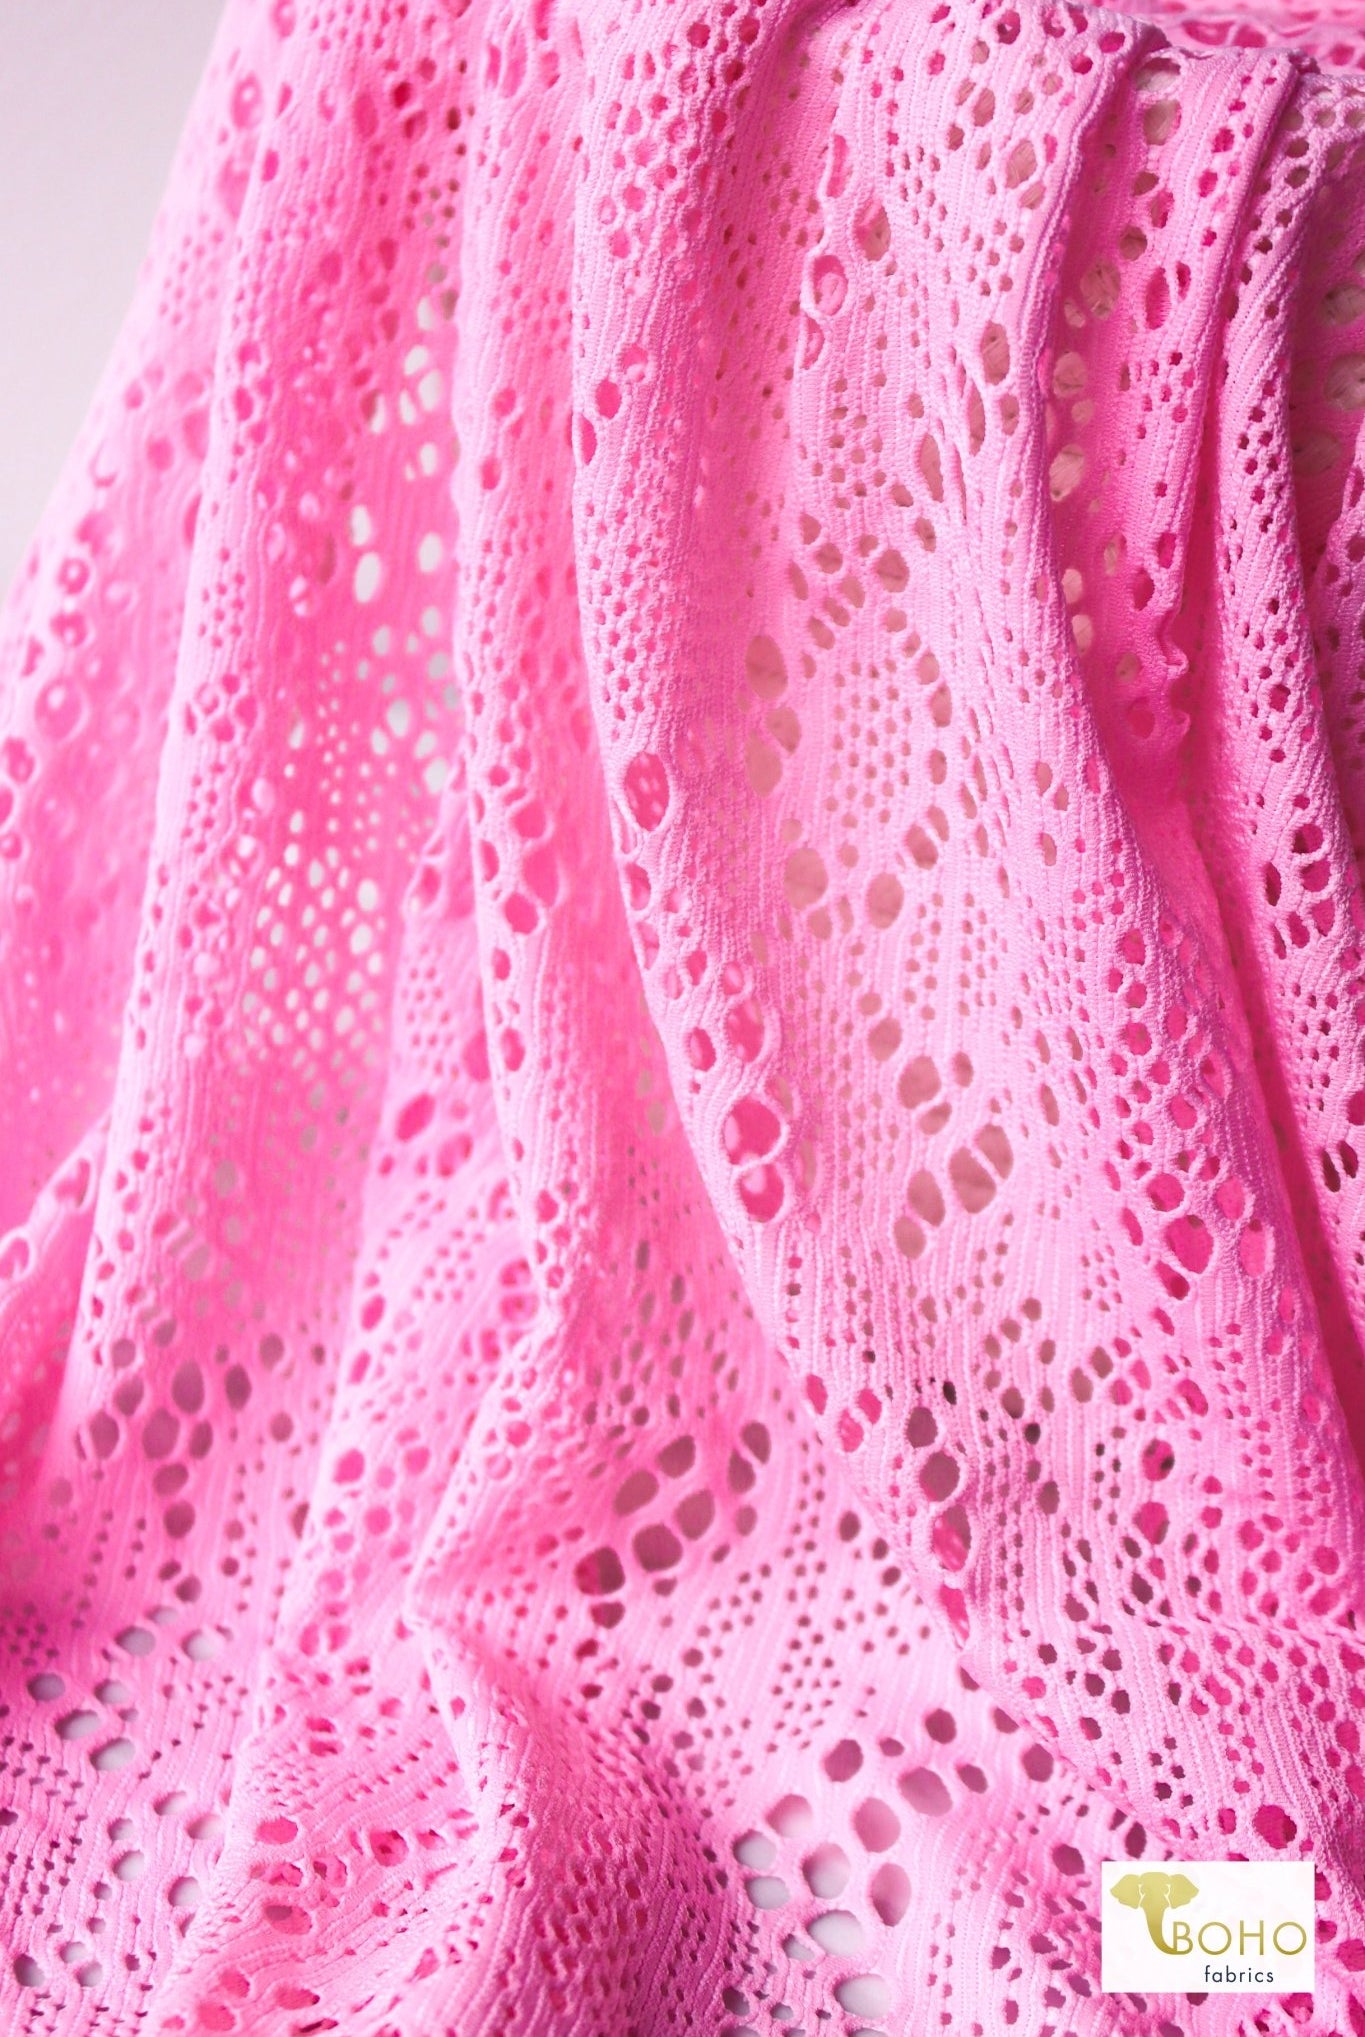 Cresendo in Rose Pink, Stretch Lace Fabric - Boho Fabrics - Stretch Lace Fabric